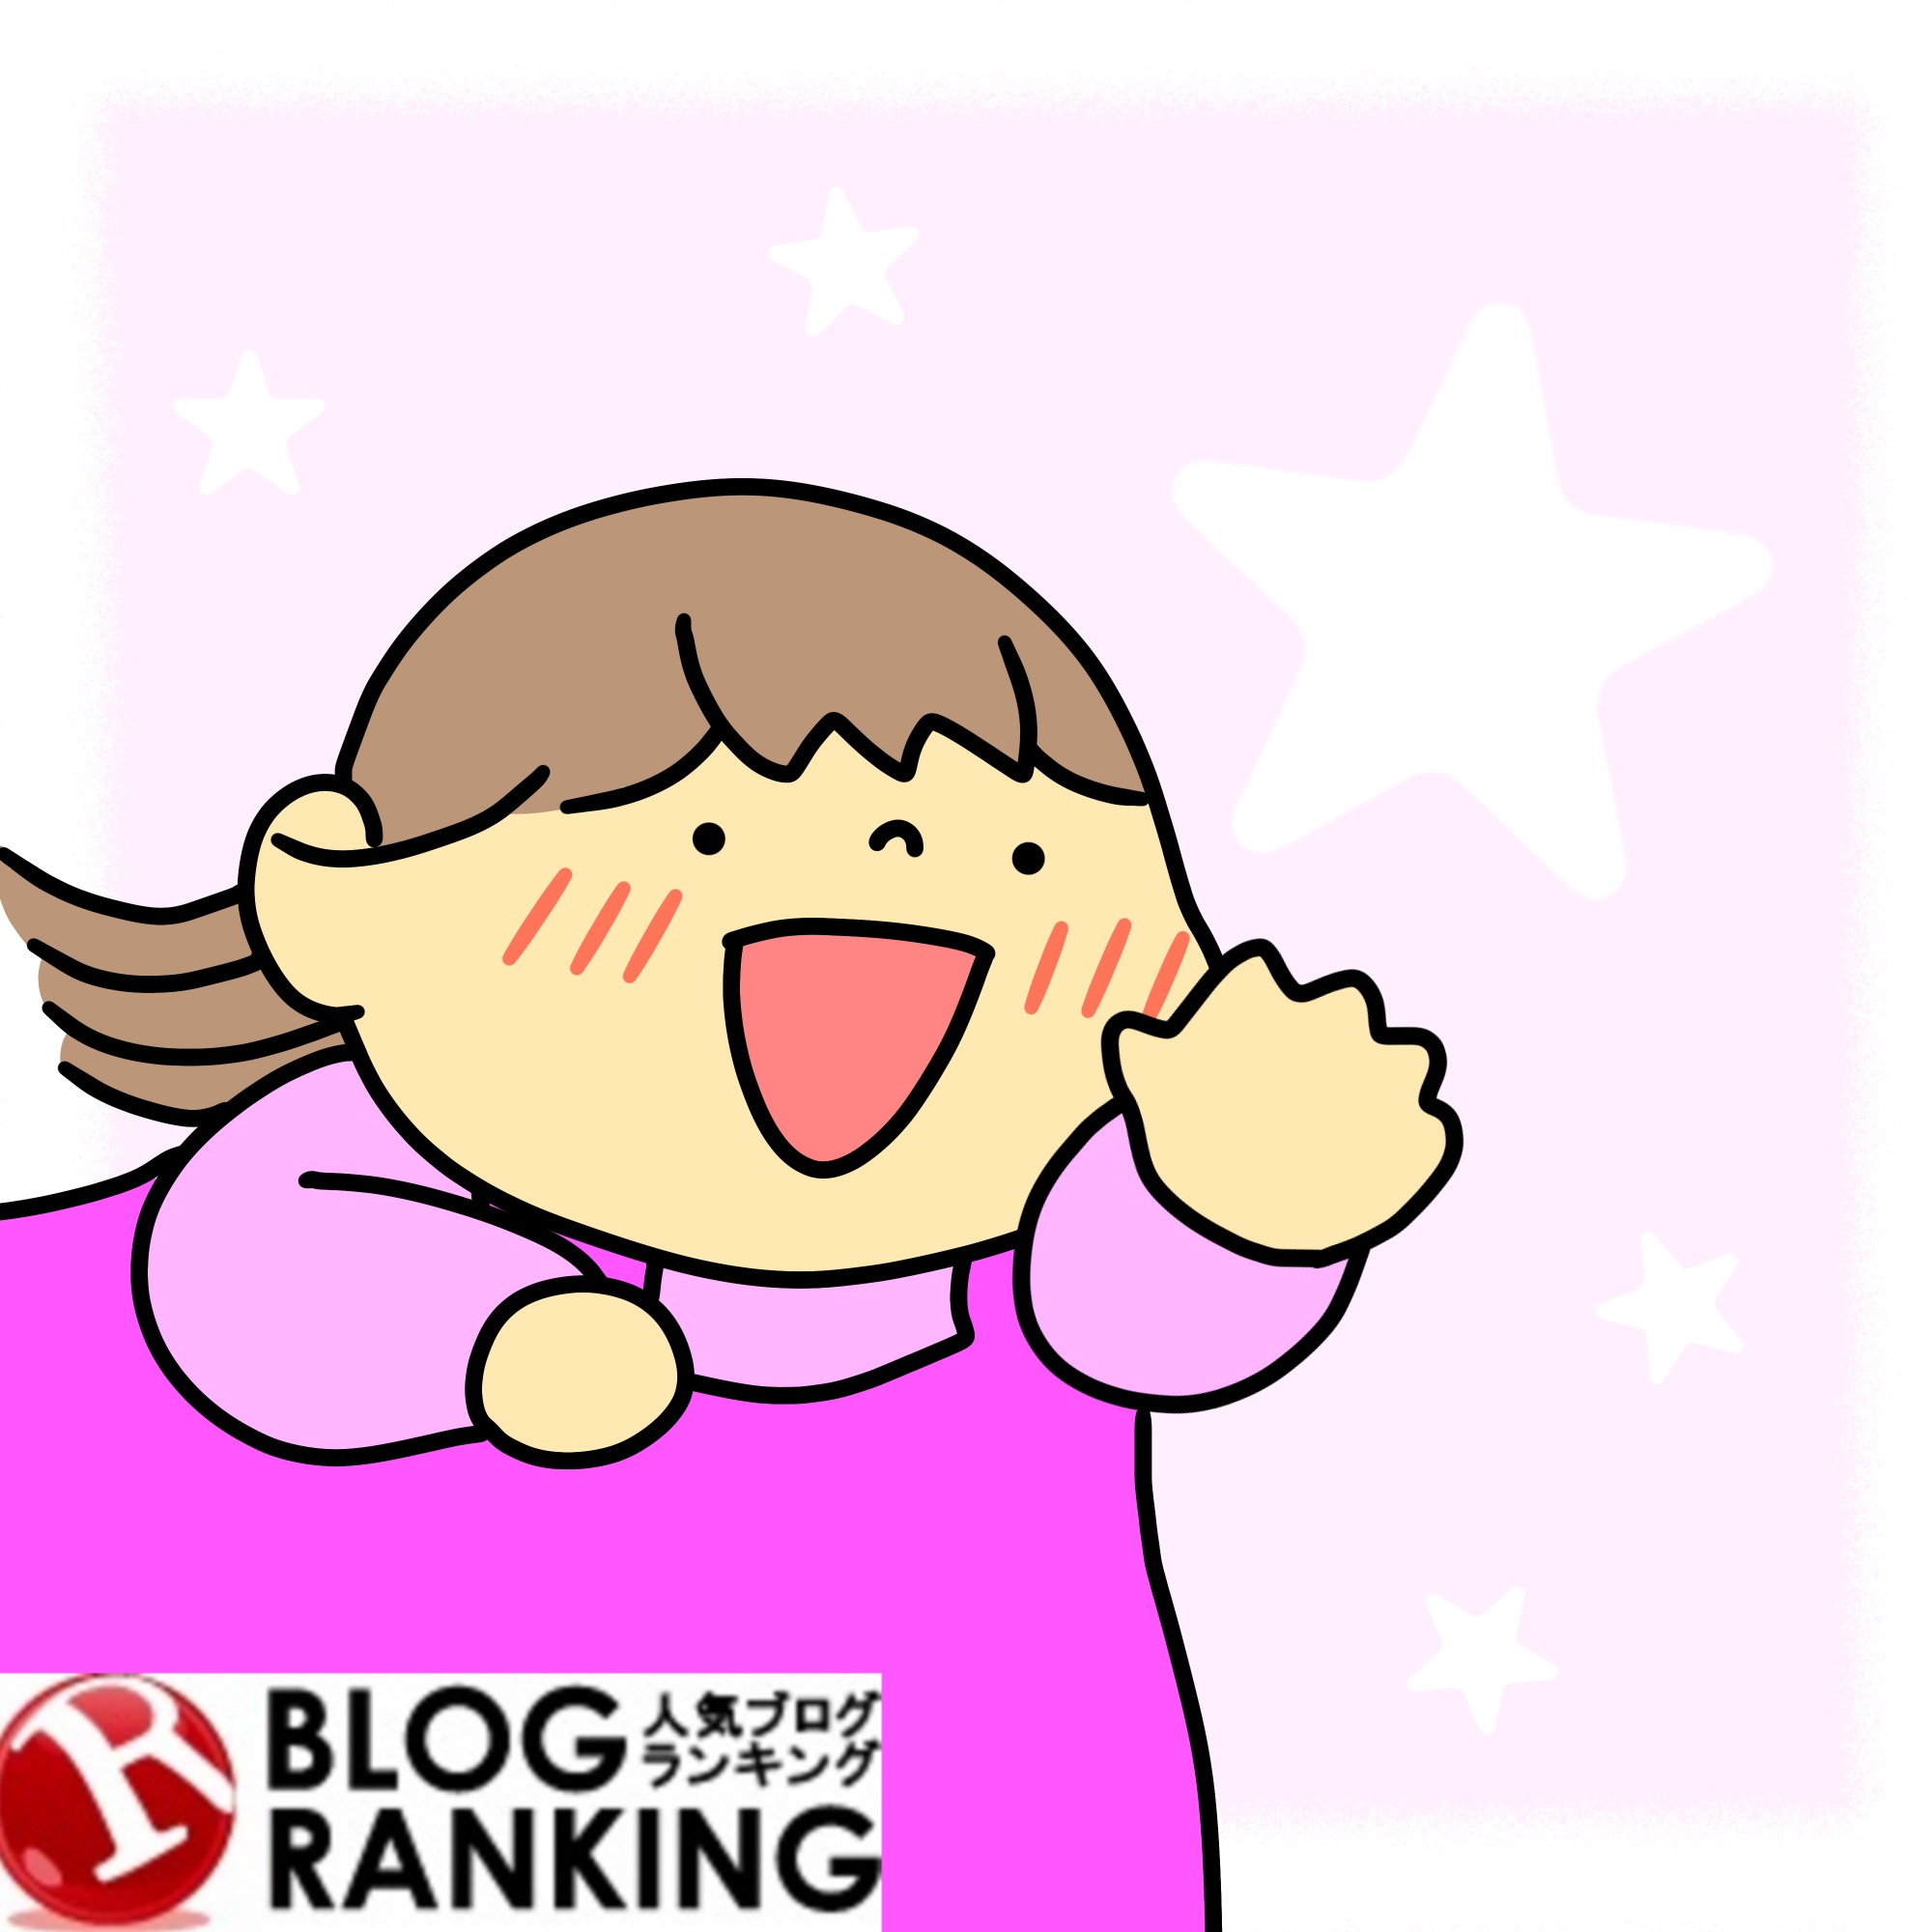 ninki_blog_ranking